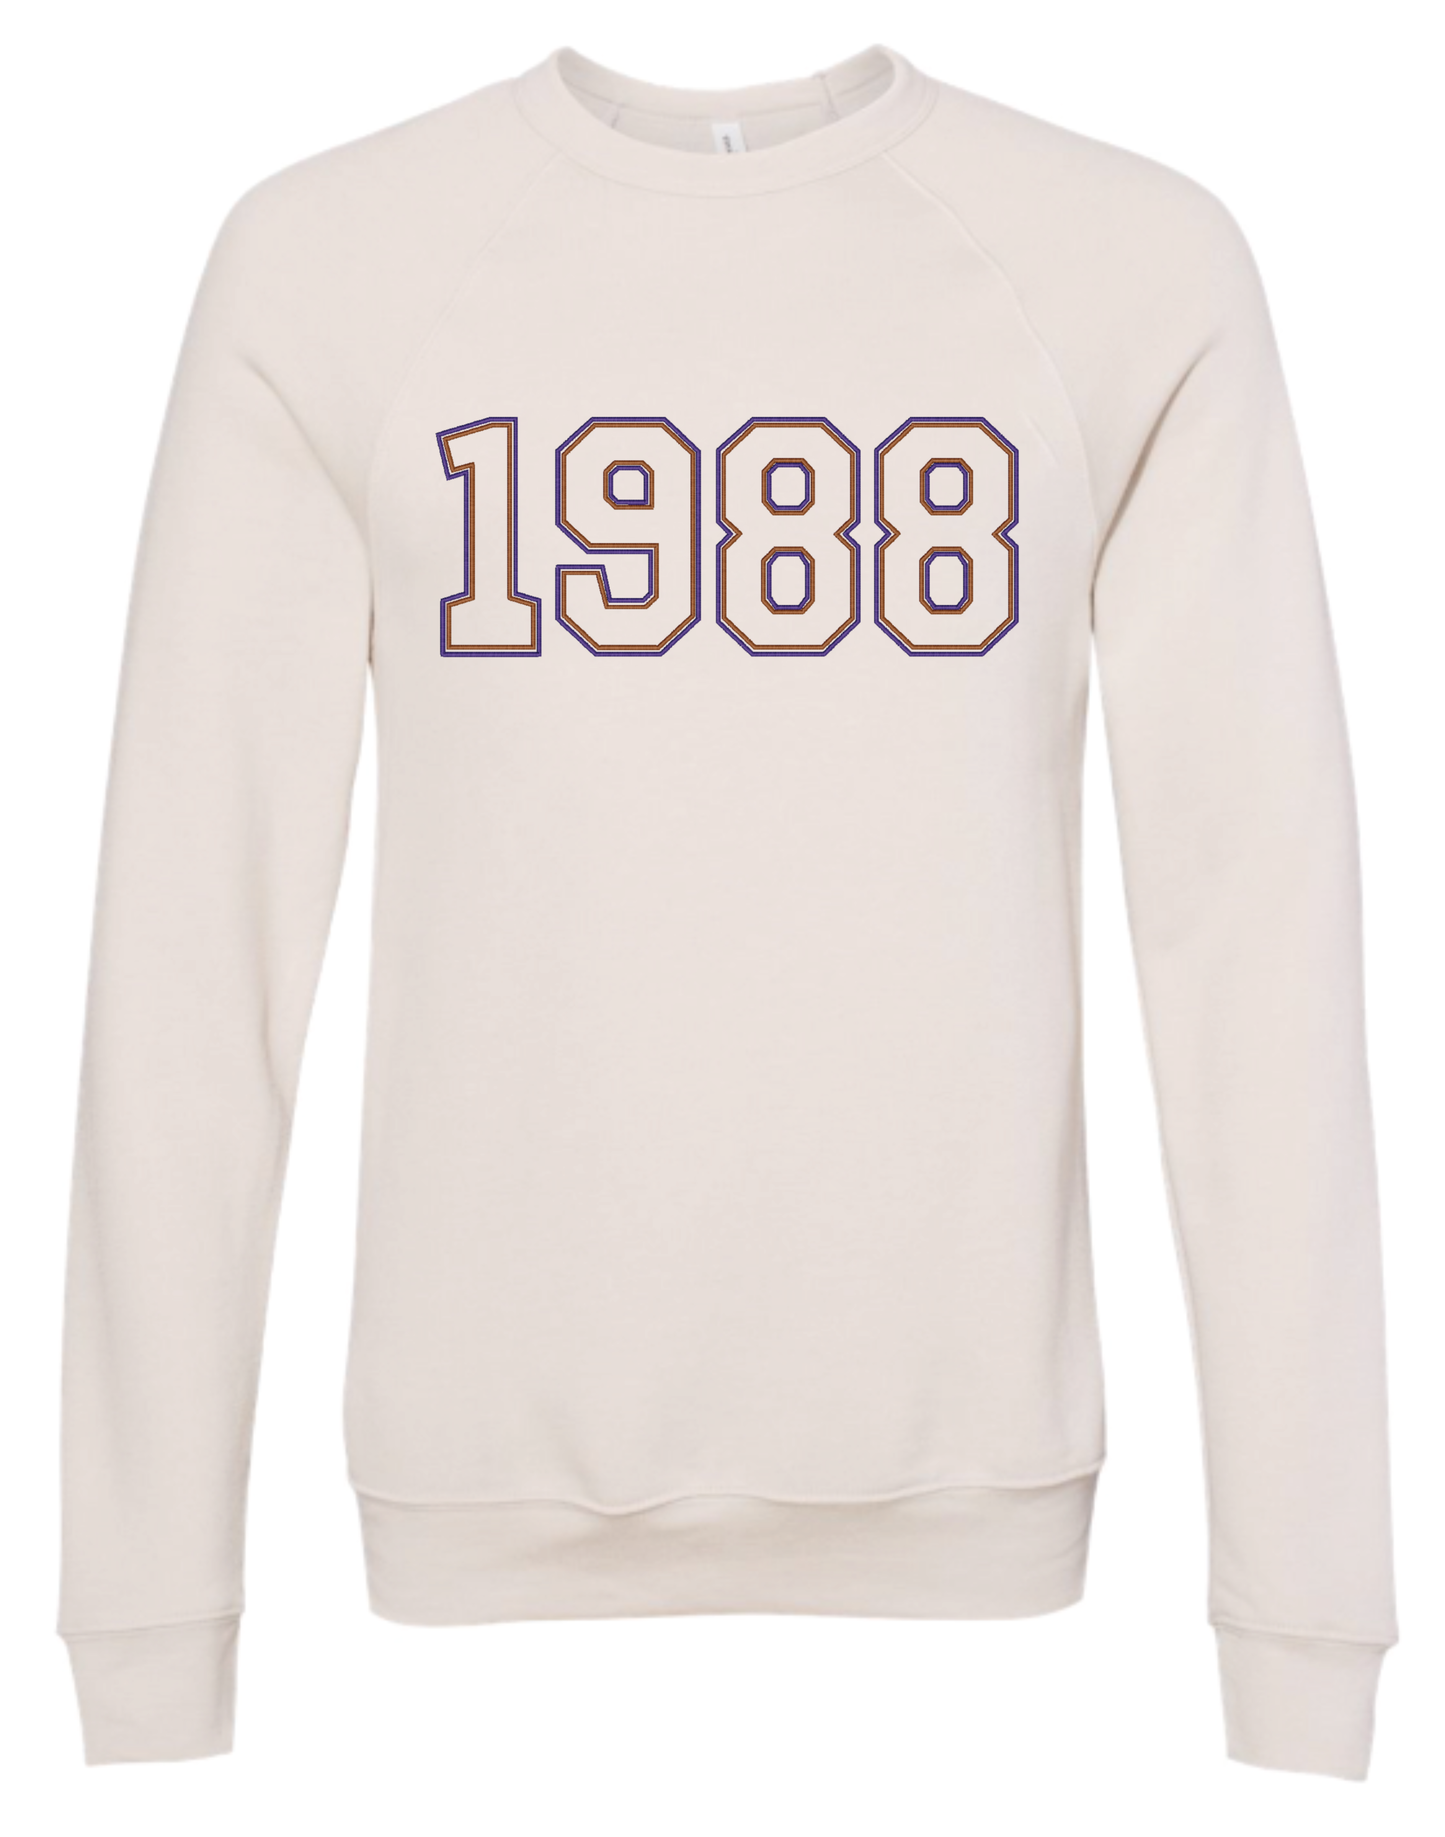 1988 Embroidered Sweatshirt